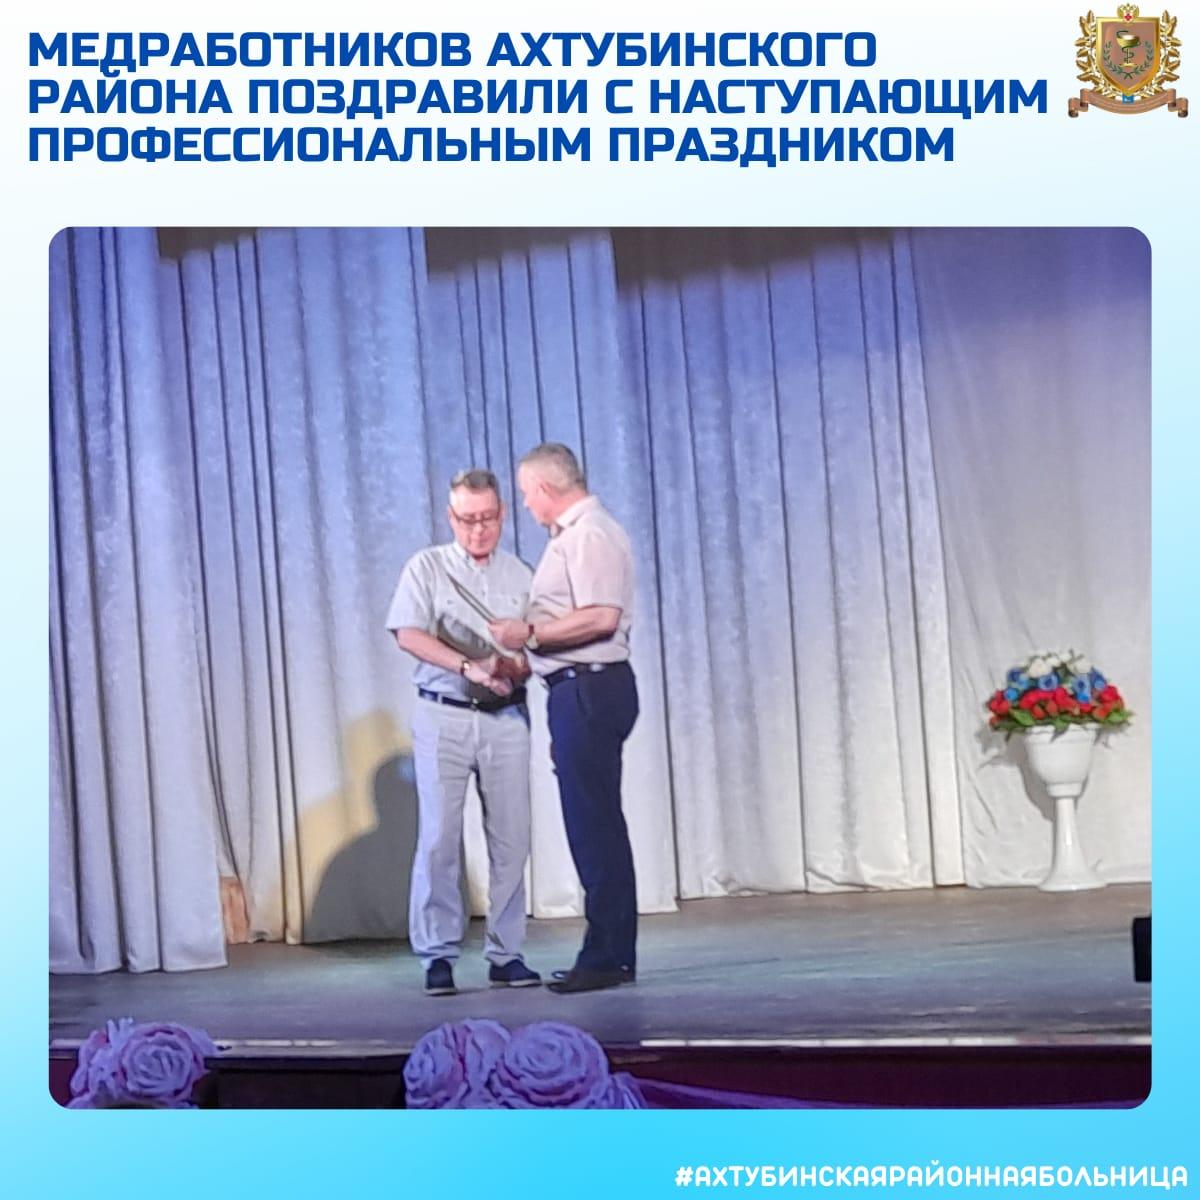 Медработников Ахтубинского района поздравили с наступающим профессиональным праздником